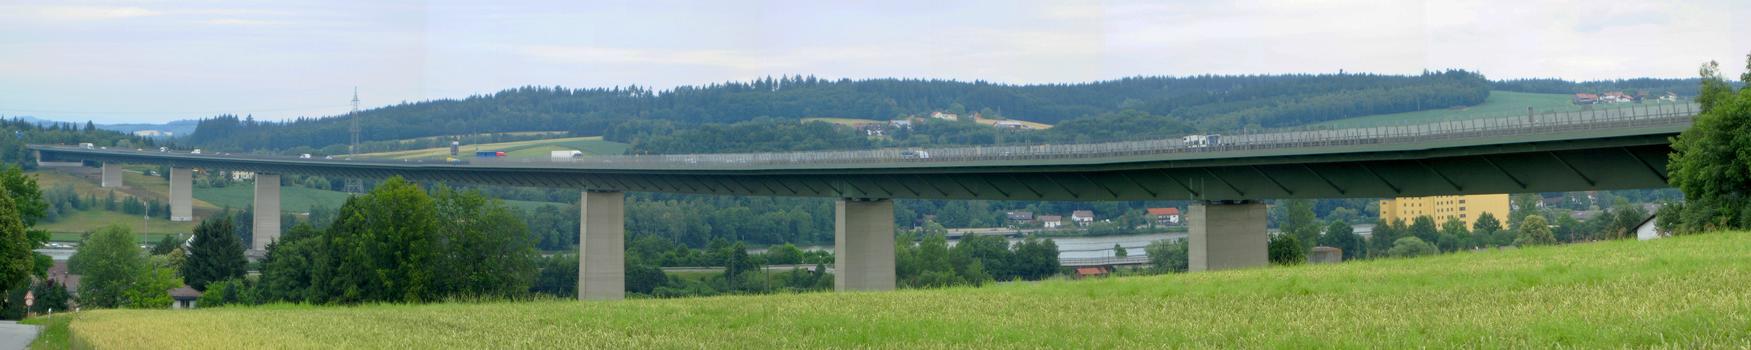 Donaubrücke Schalding